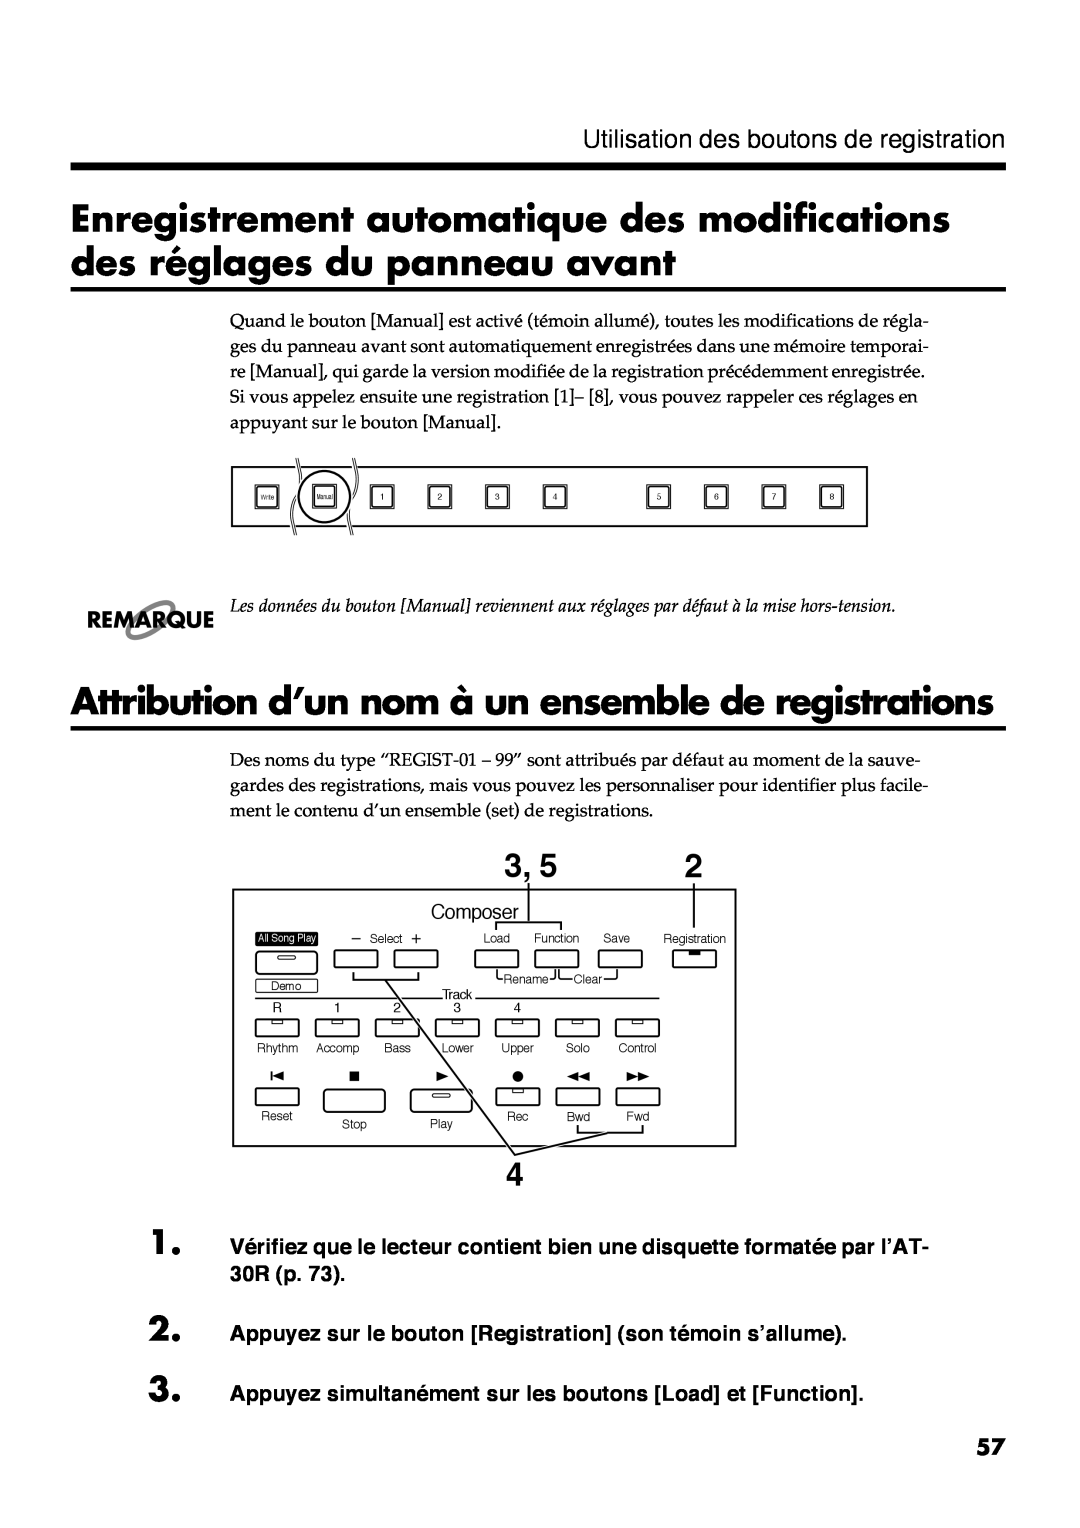 Roland AT30R Attribution d’un nom à un ensemble de registrations, Remarque, Utilisation des boutons de registration, $659% 